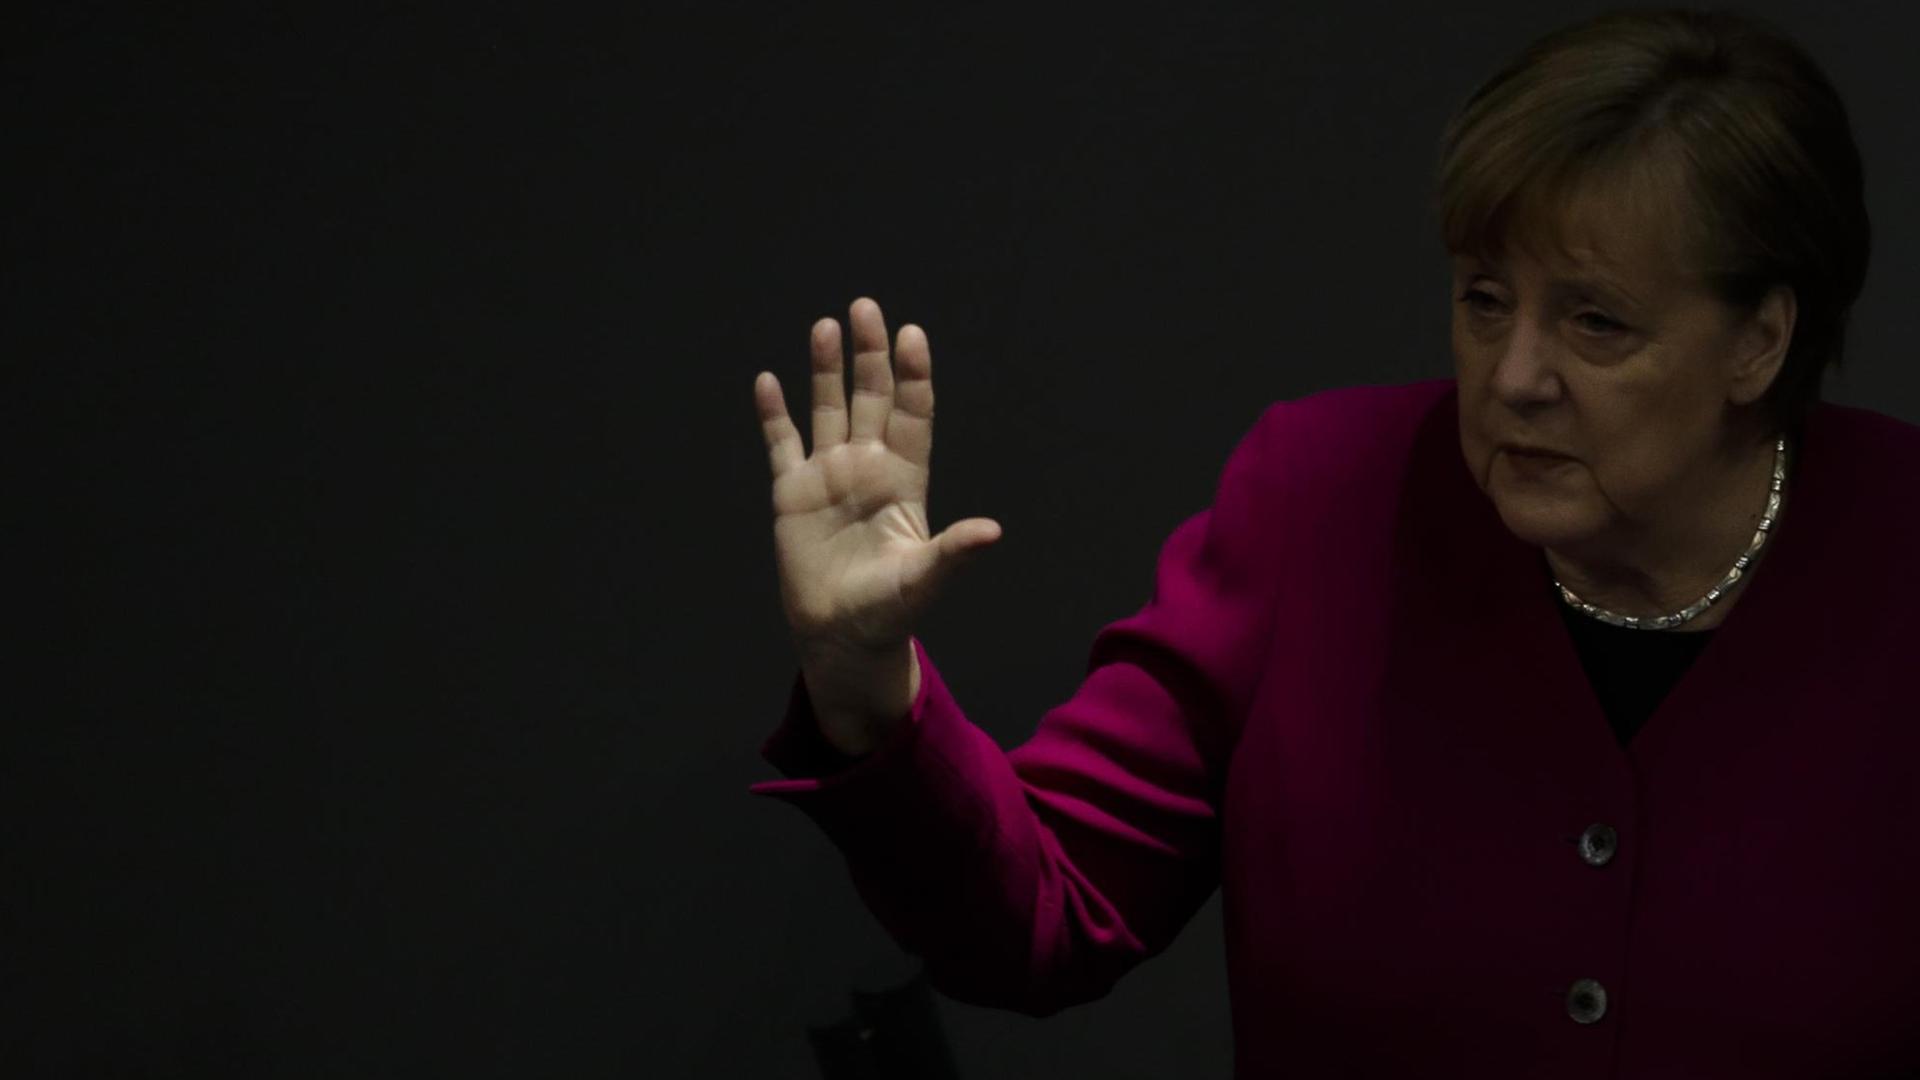 Bundeskanzlerin Angela Merkel bei einer Rede im Bundestag